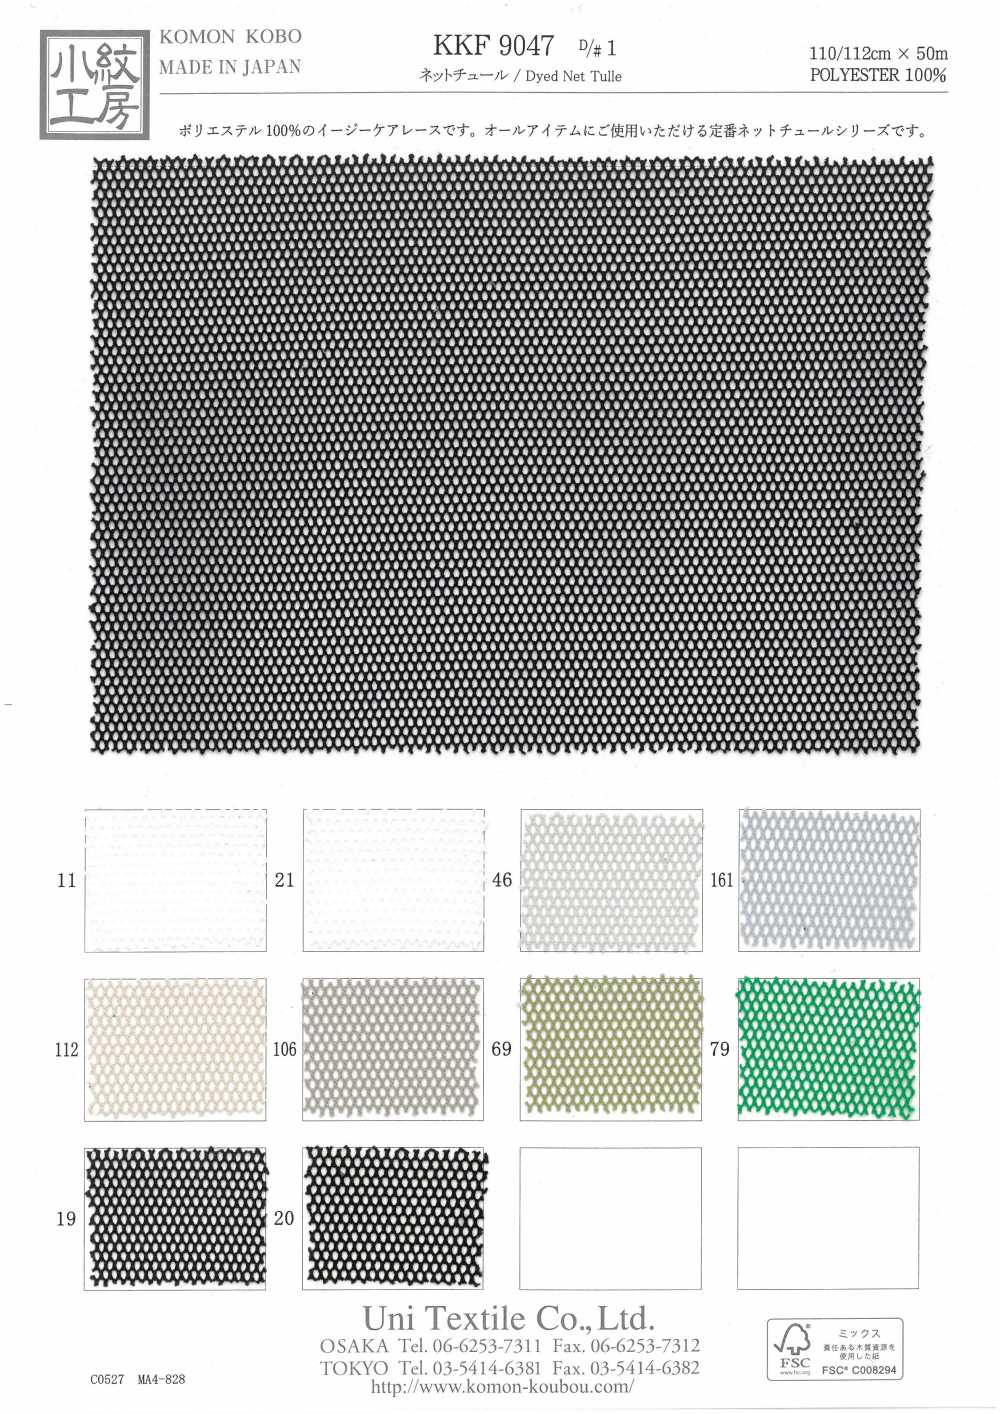 KKF9047-D/1 Netz Tüll[Textilgewebe] Uni Textile